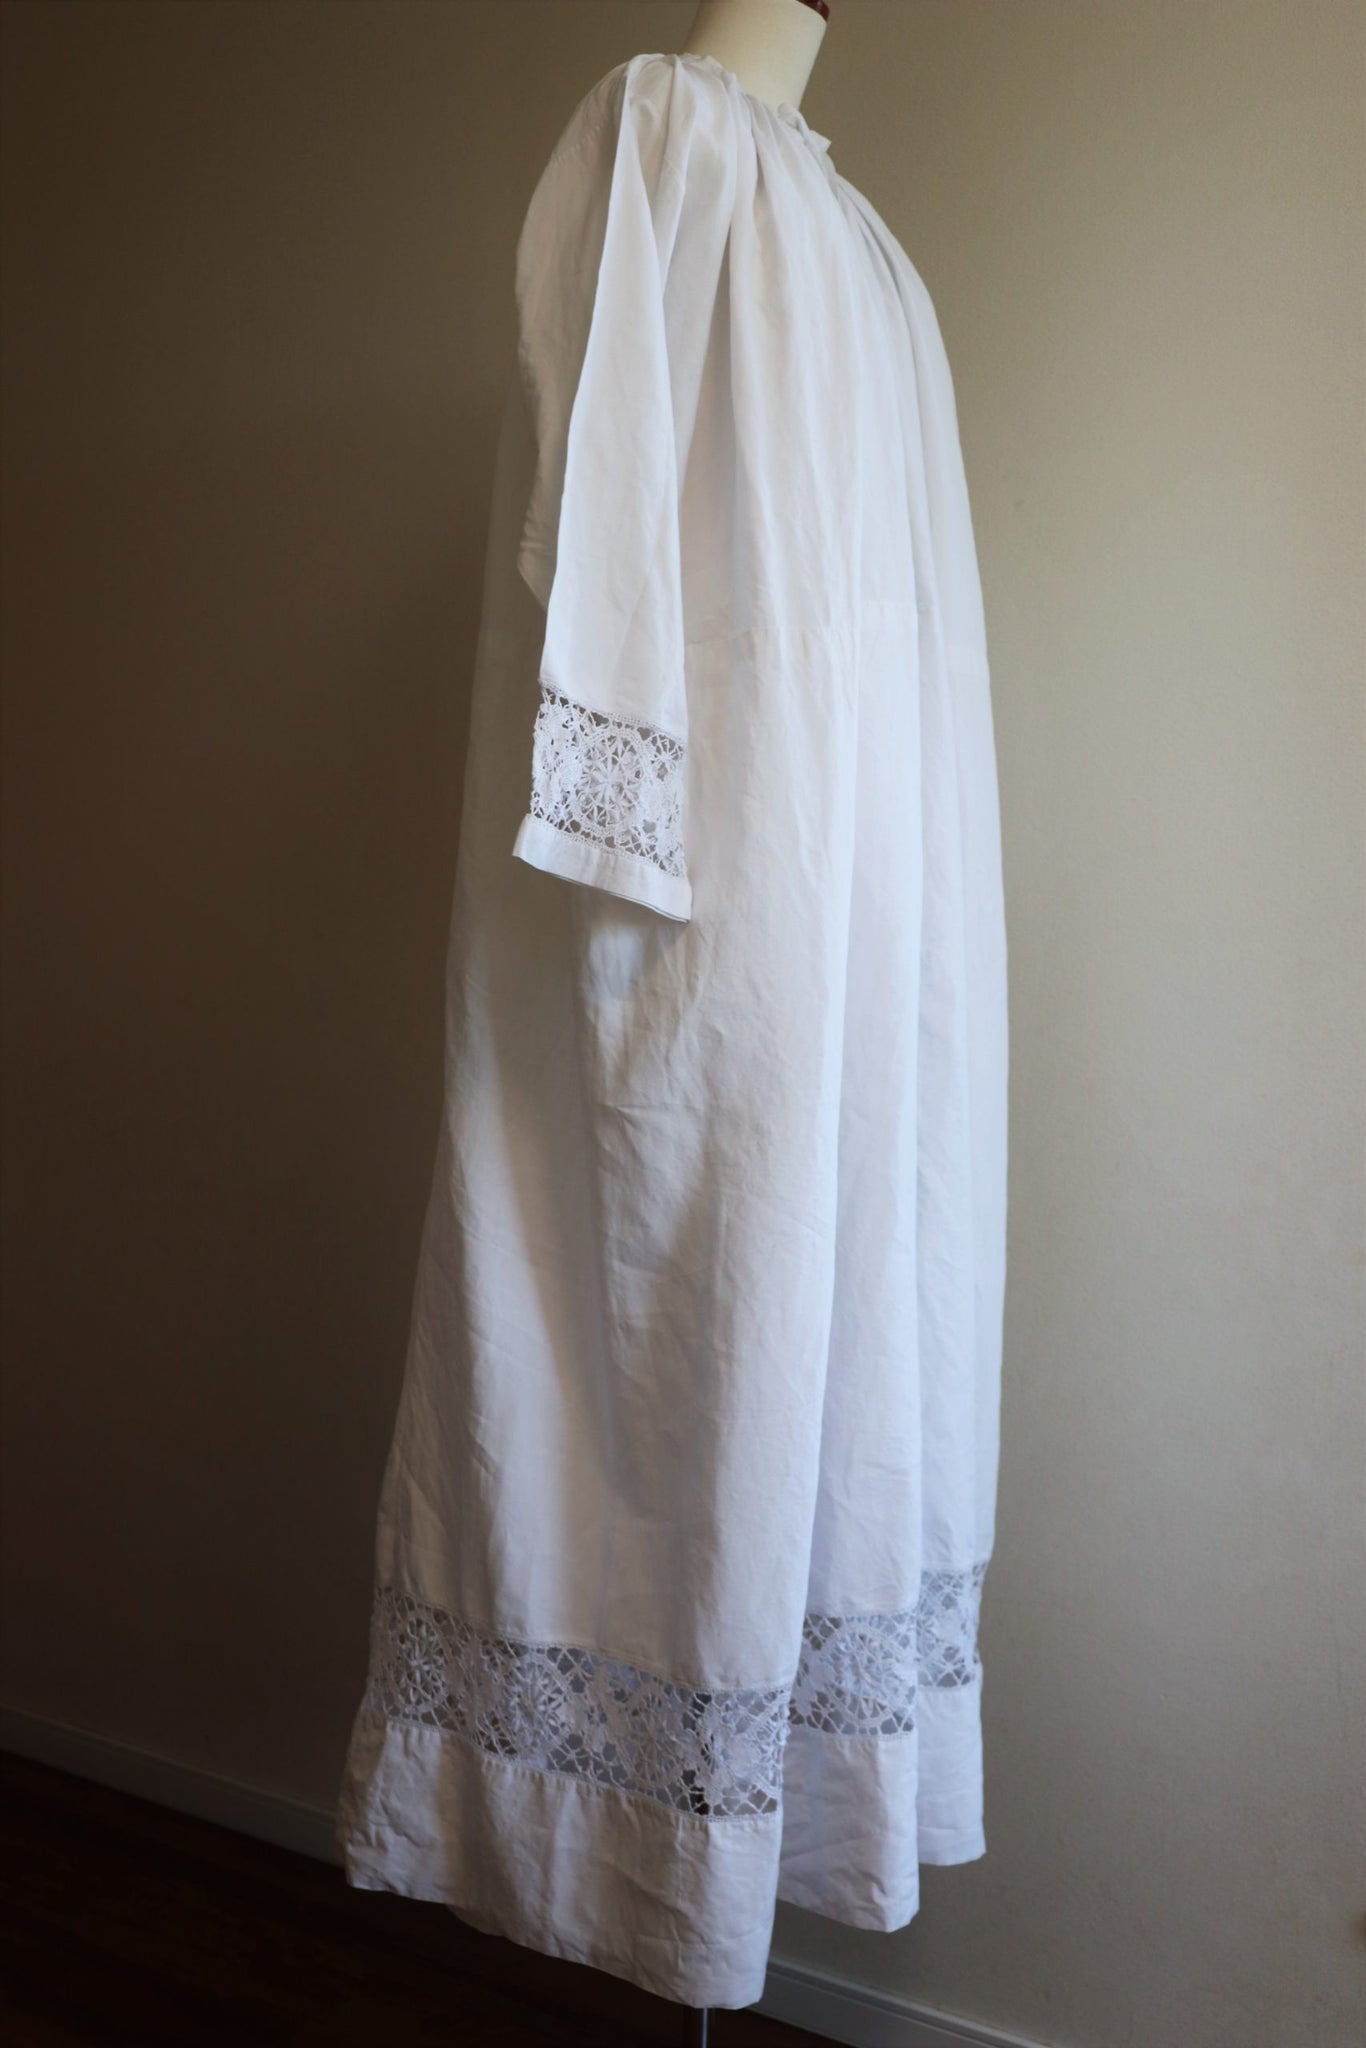 Antique Church Linen Dress Floor Length Hand Embroidery